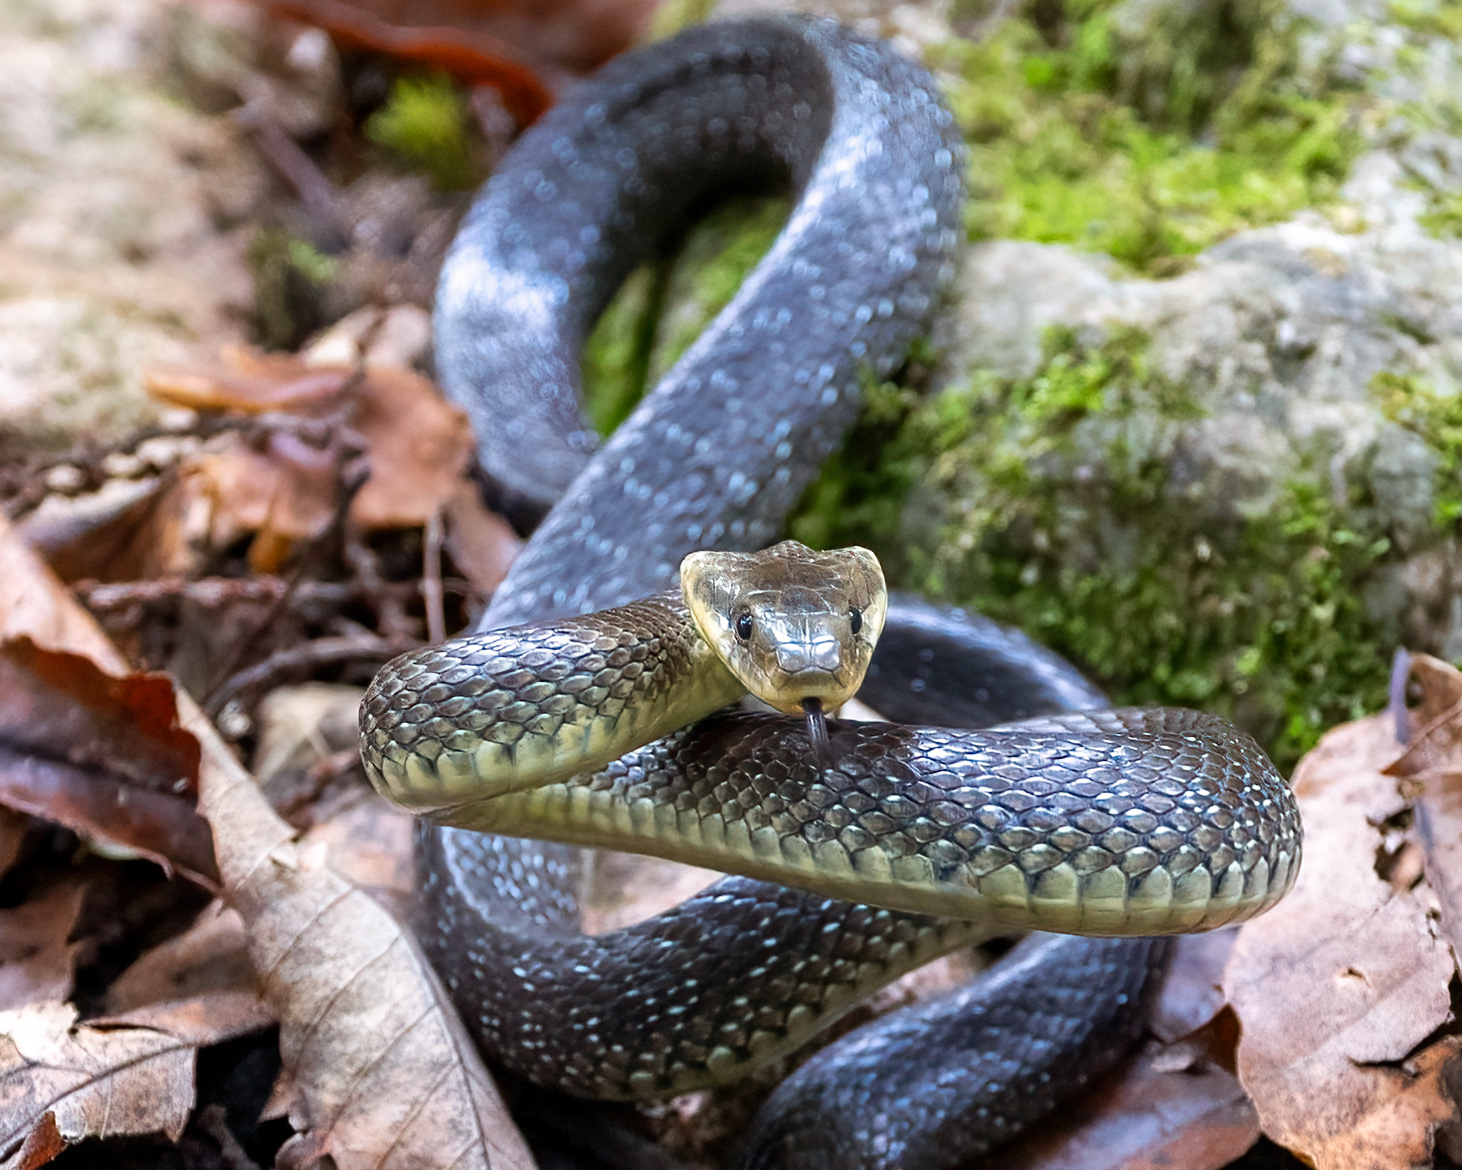 Aesculapius snake or saettone...